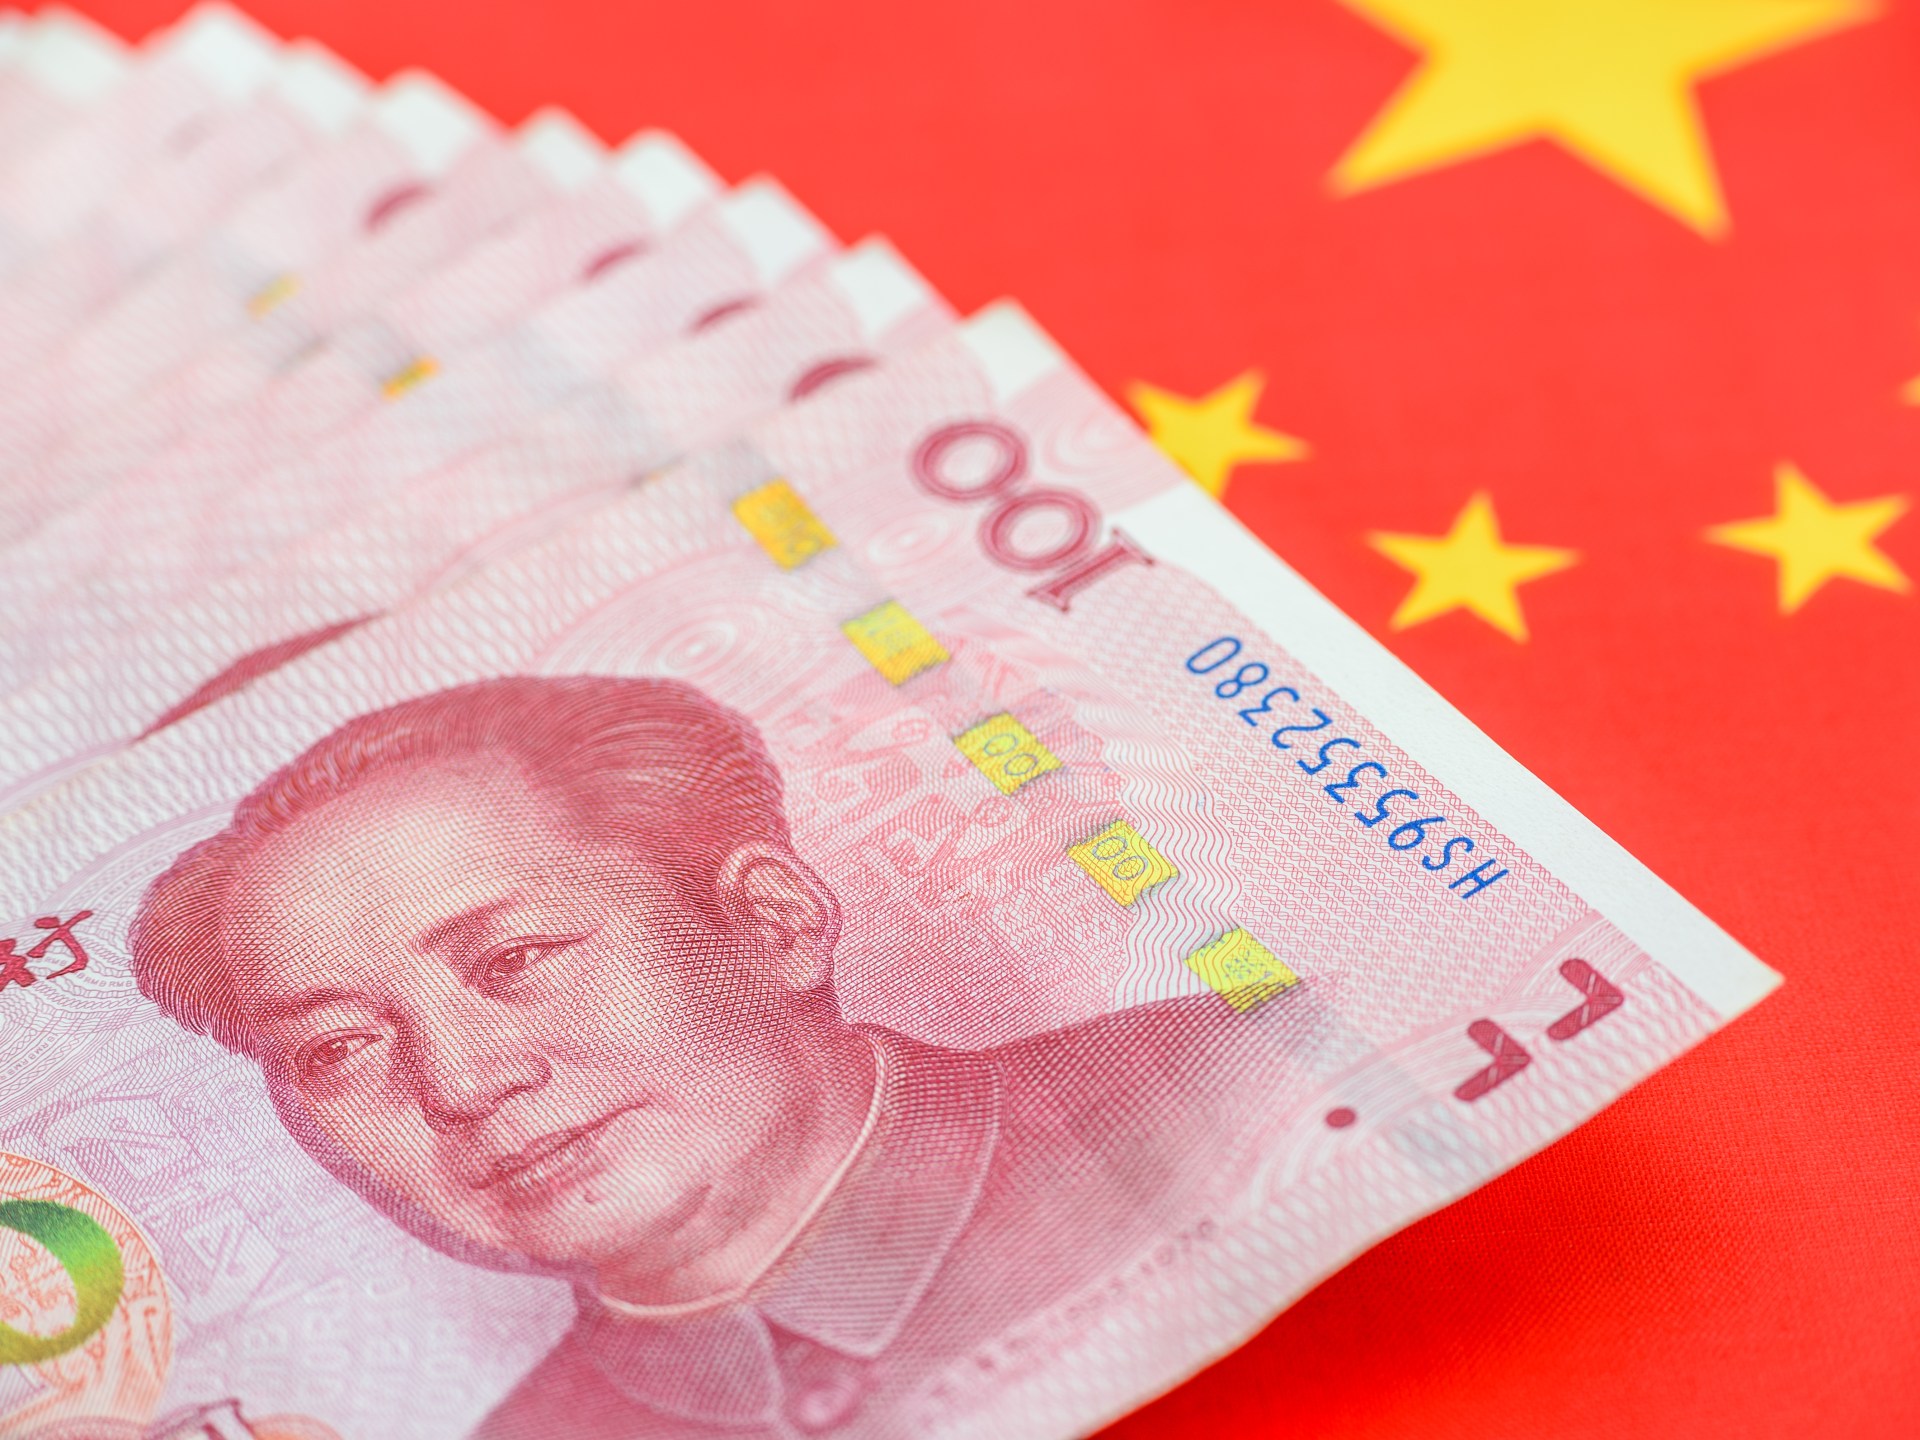 أكثر من تريليون دولار استثمارات المؤسسات الصينية بالمحافظ الخارجية | اقتصاد – البوكس نيوز